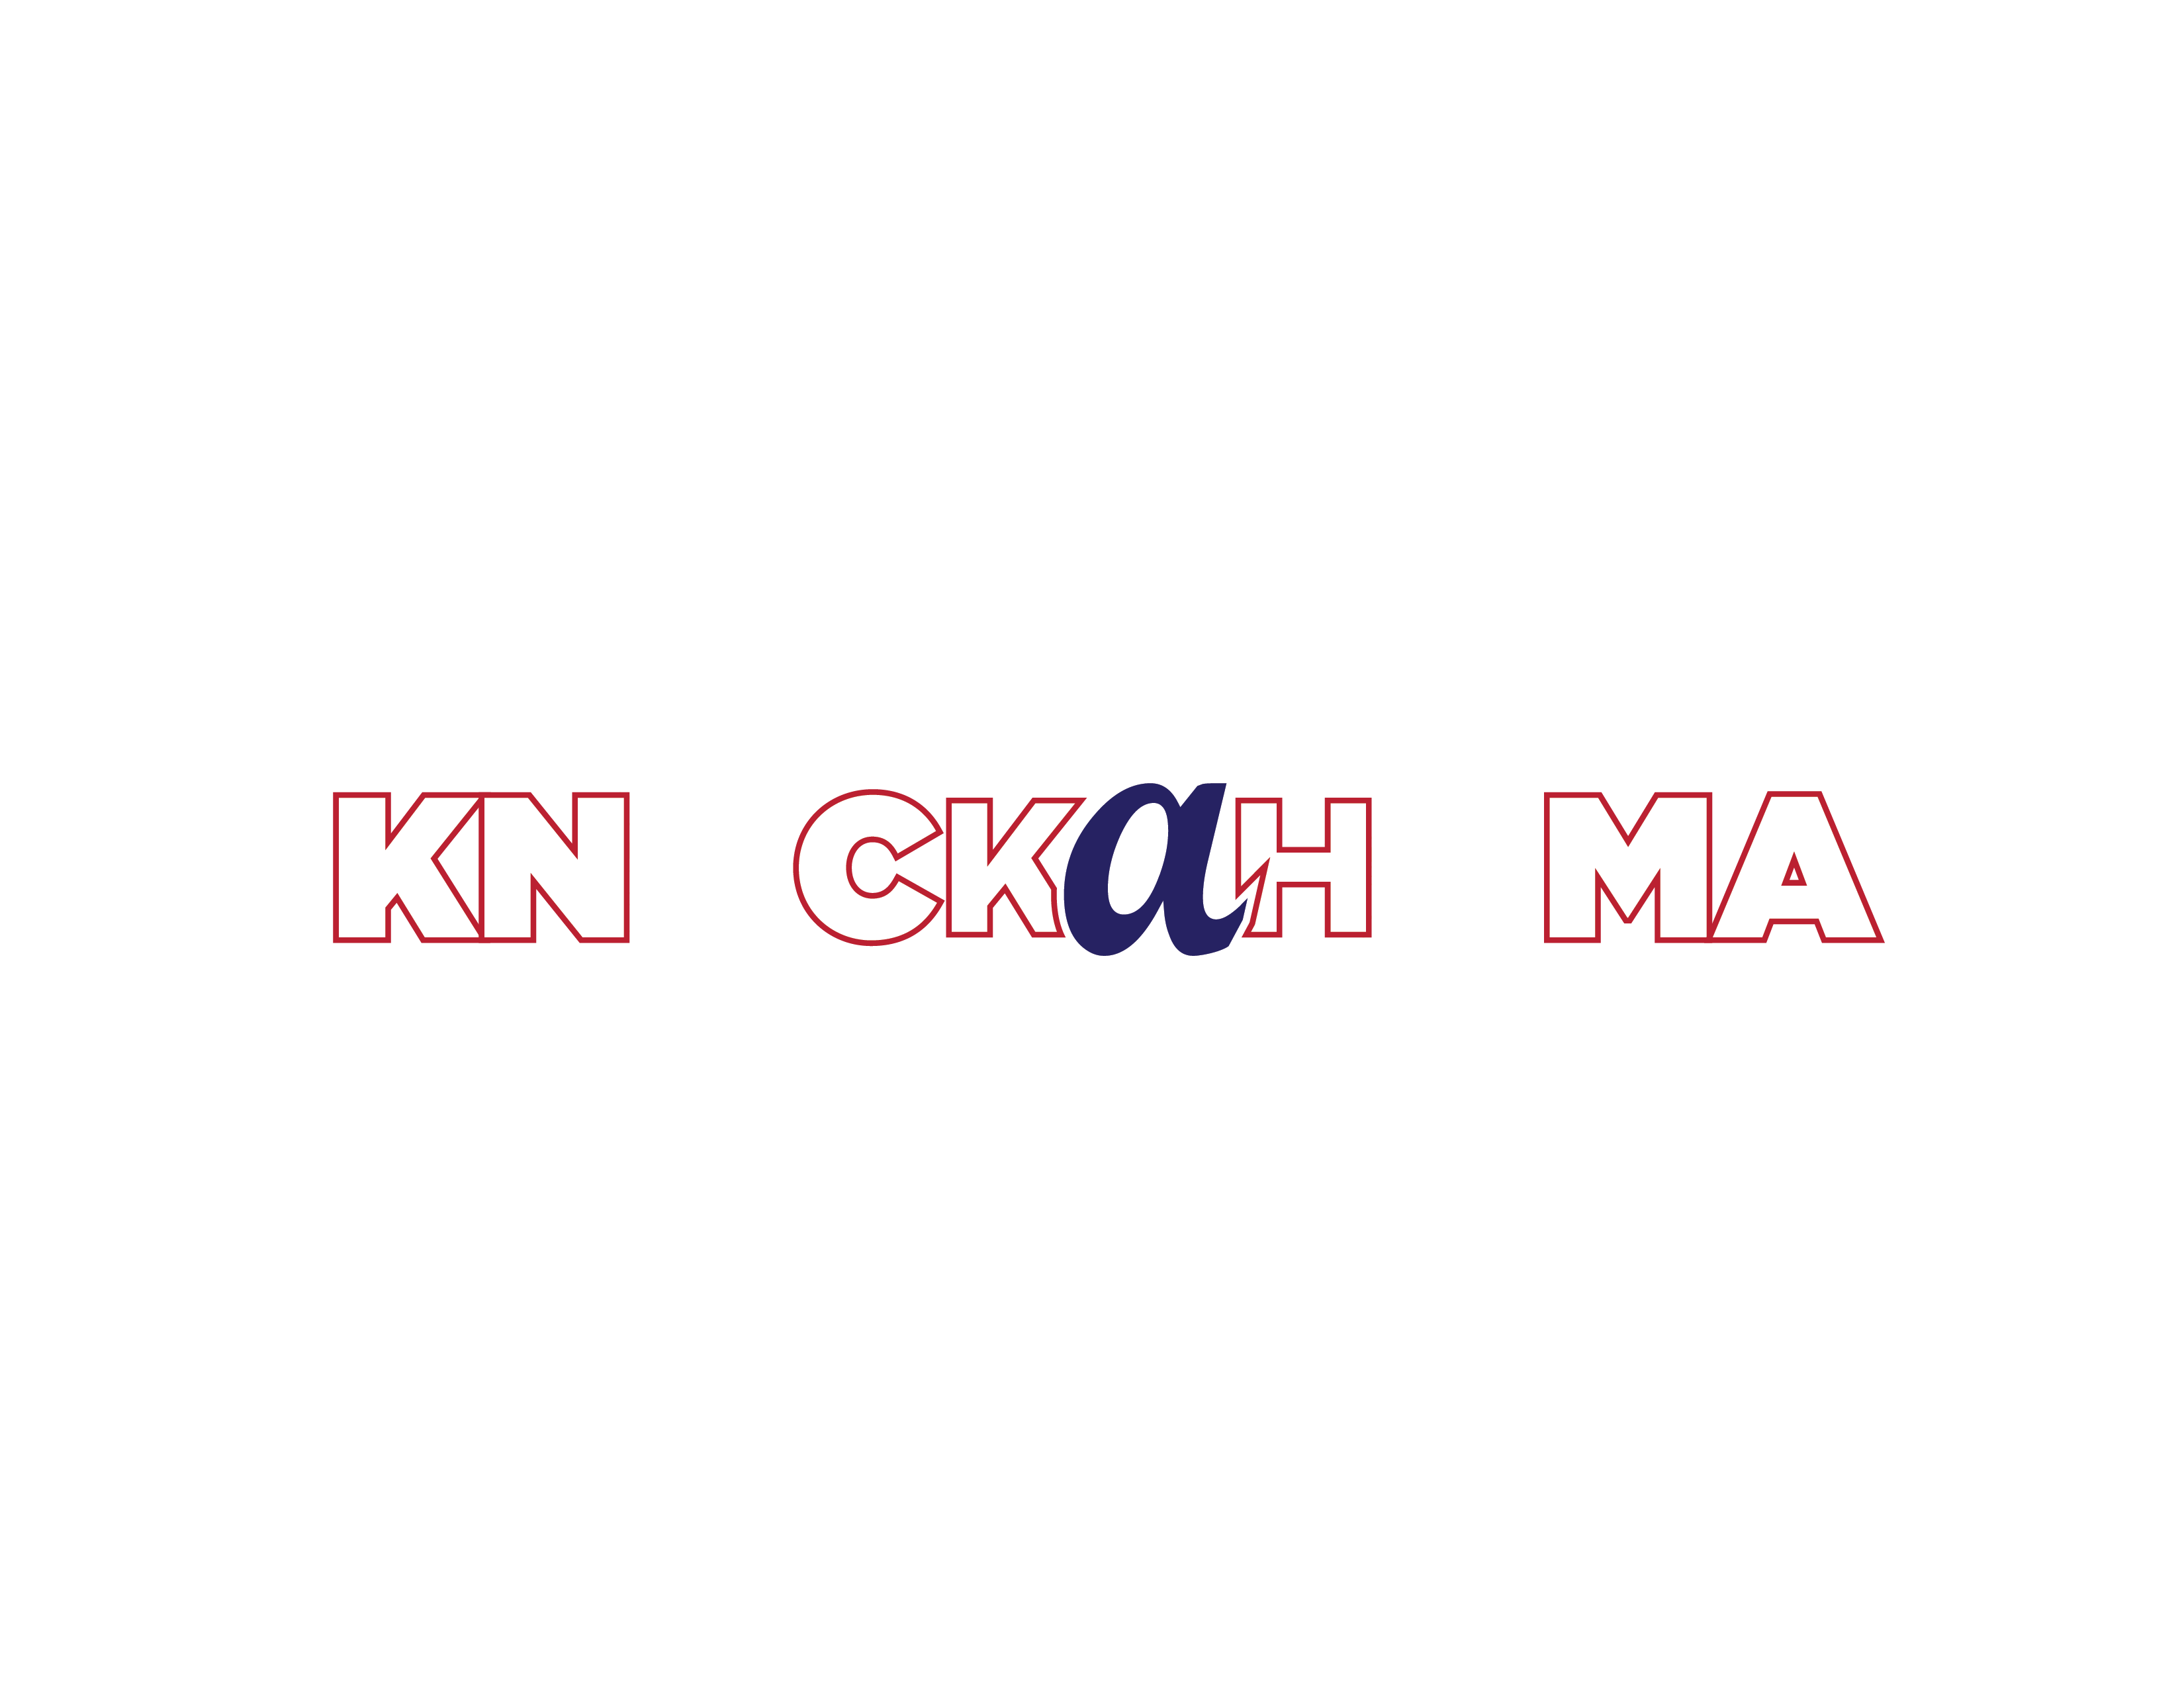 Knockahoma Nation